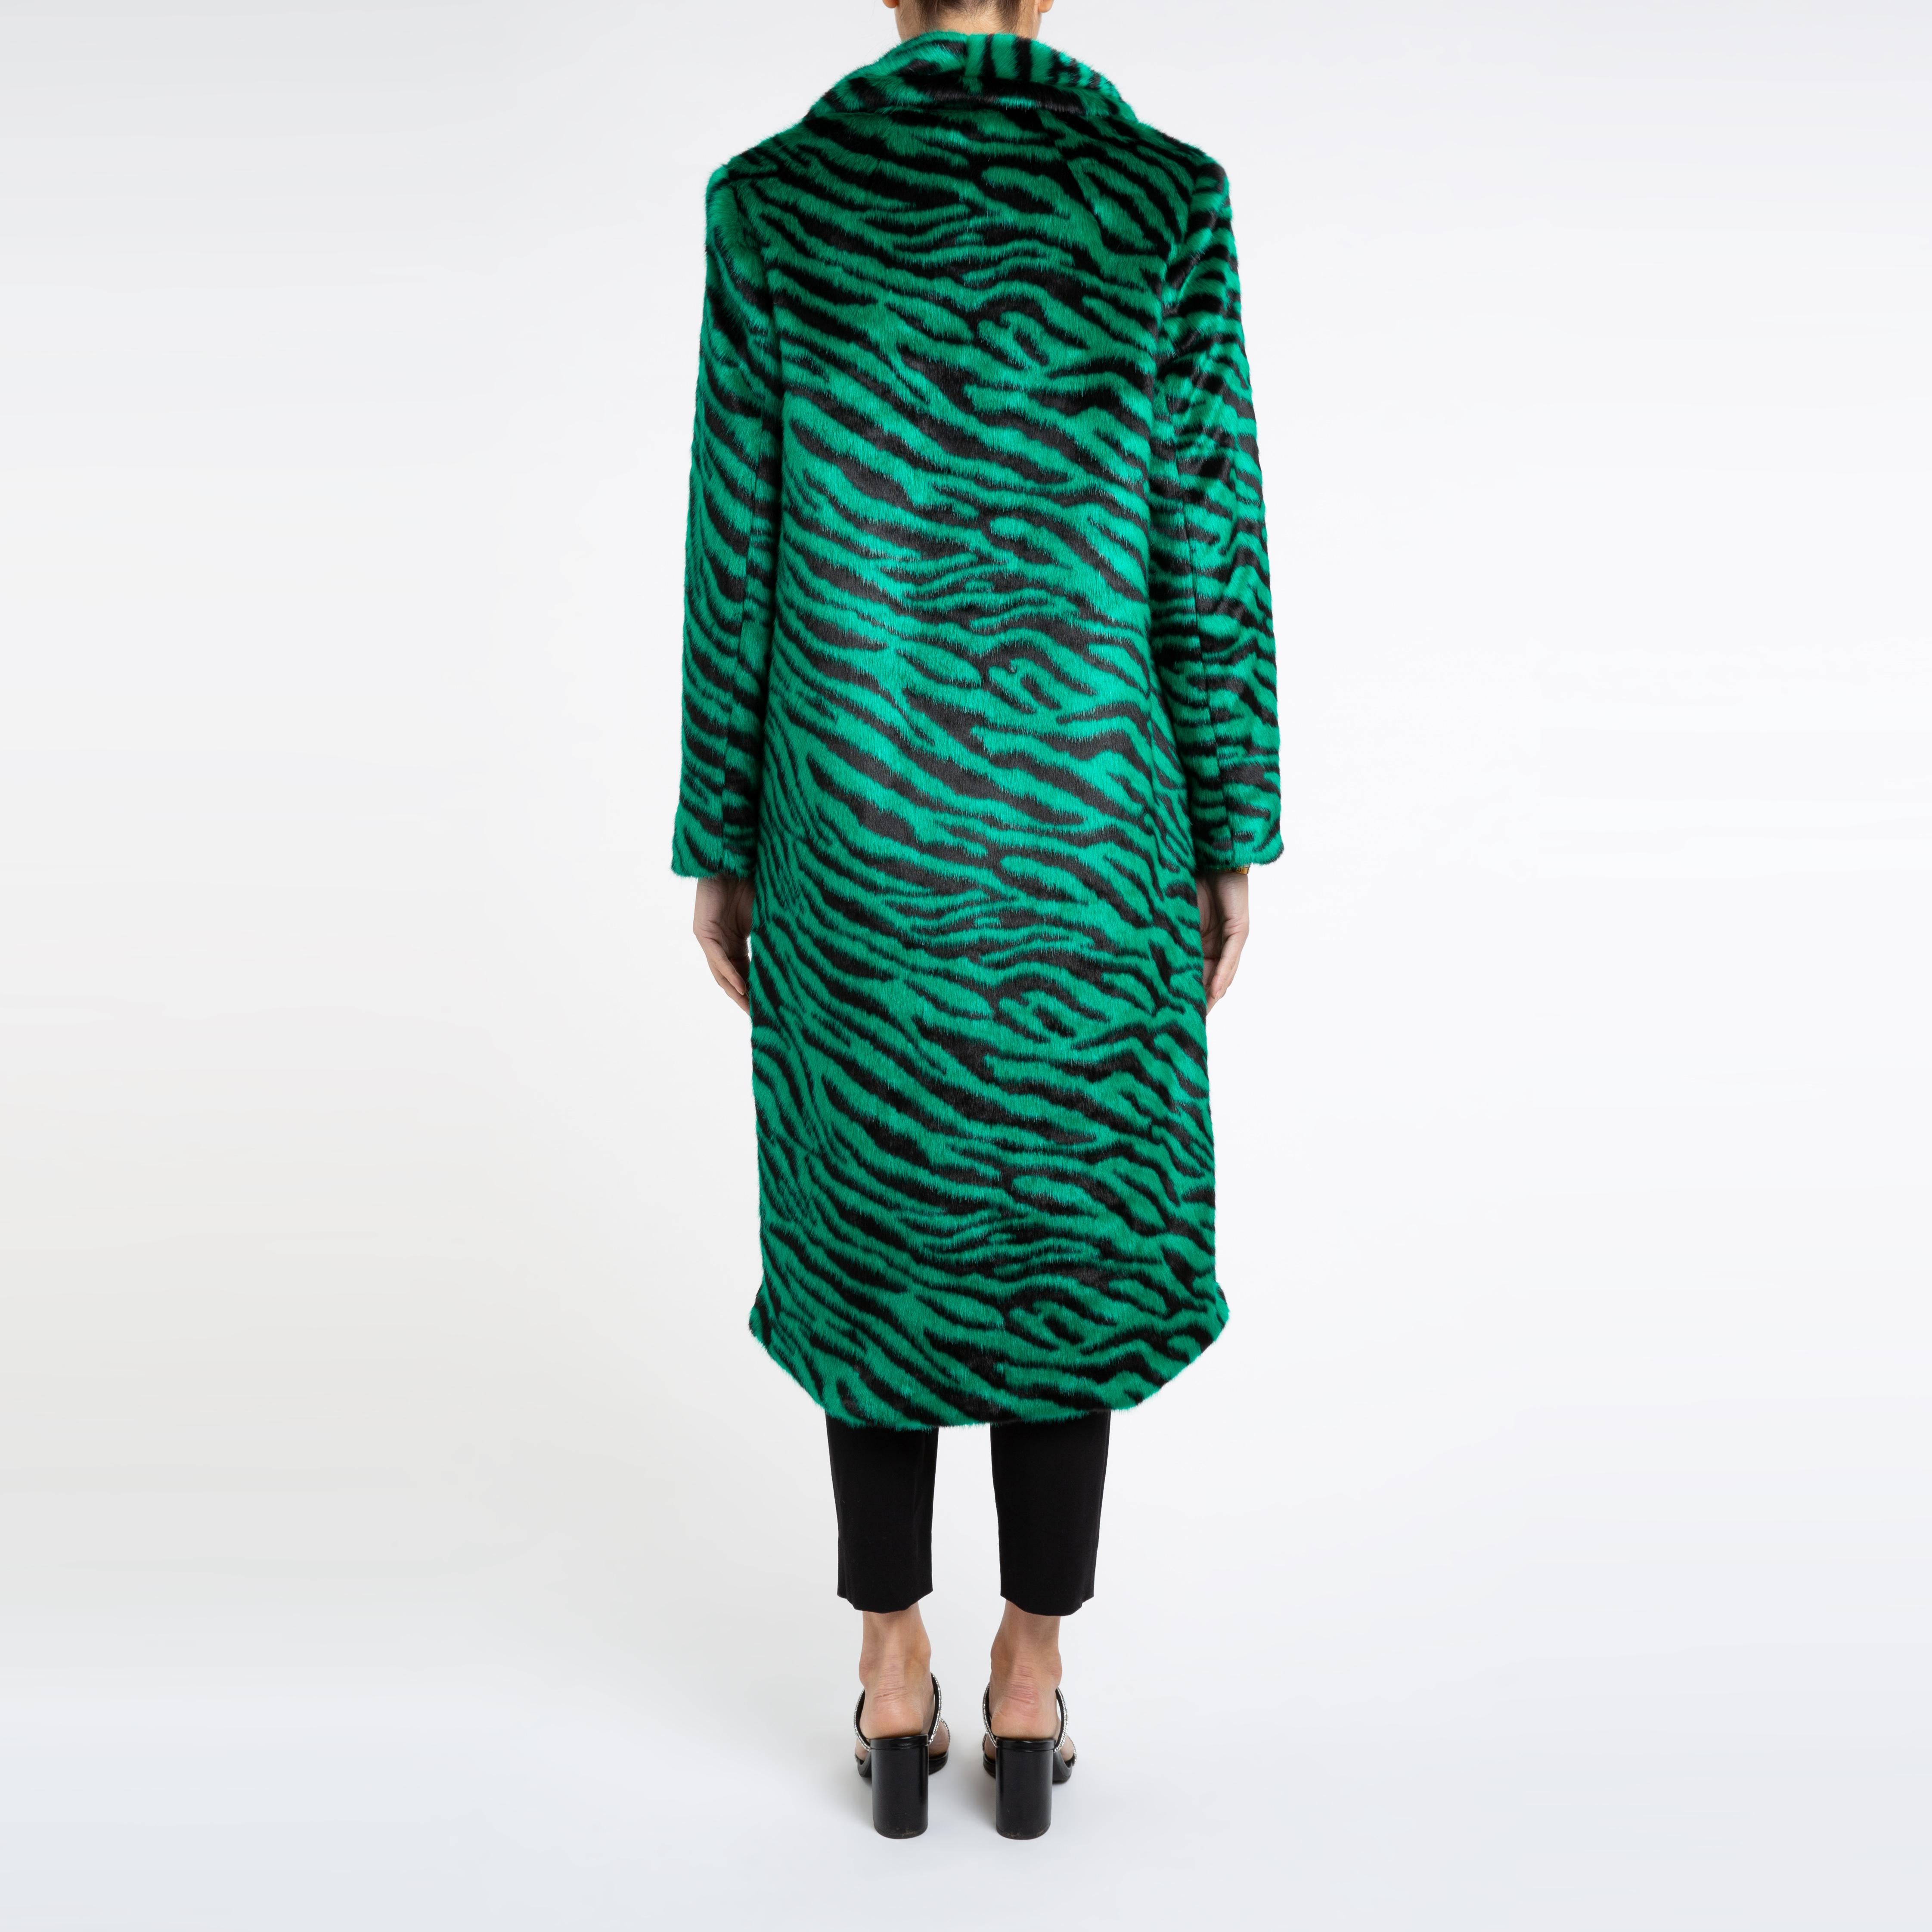 Women's Verheyen London Esmeralda Faux Fur Coat in Emerald Green Zebra Print size uk 8